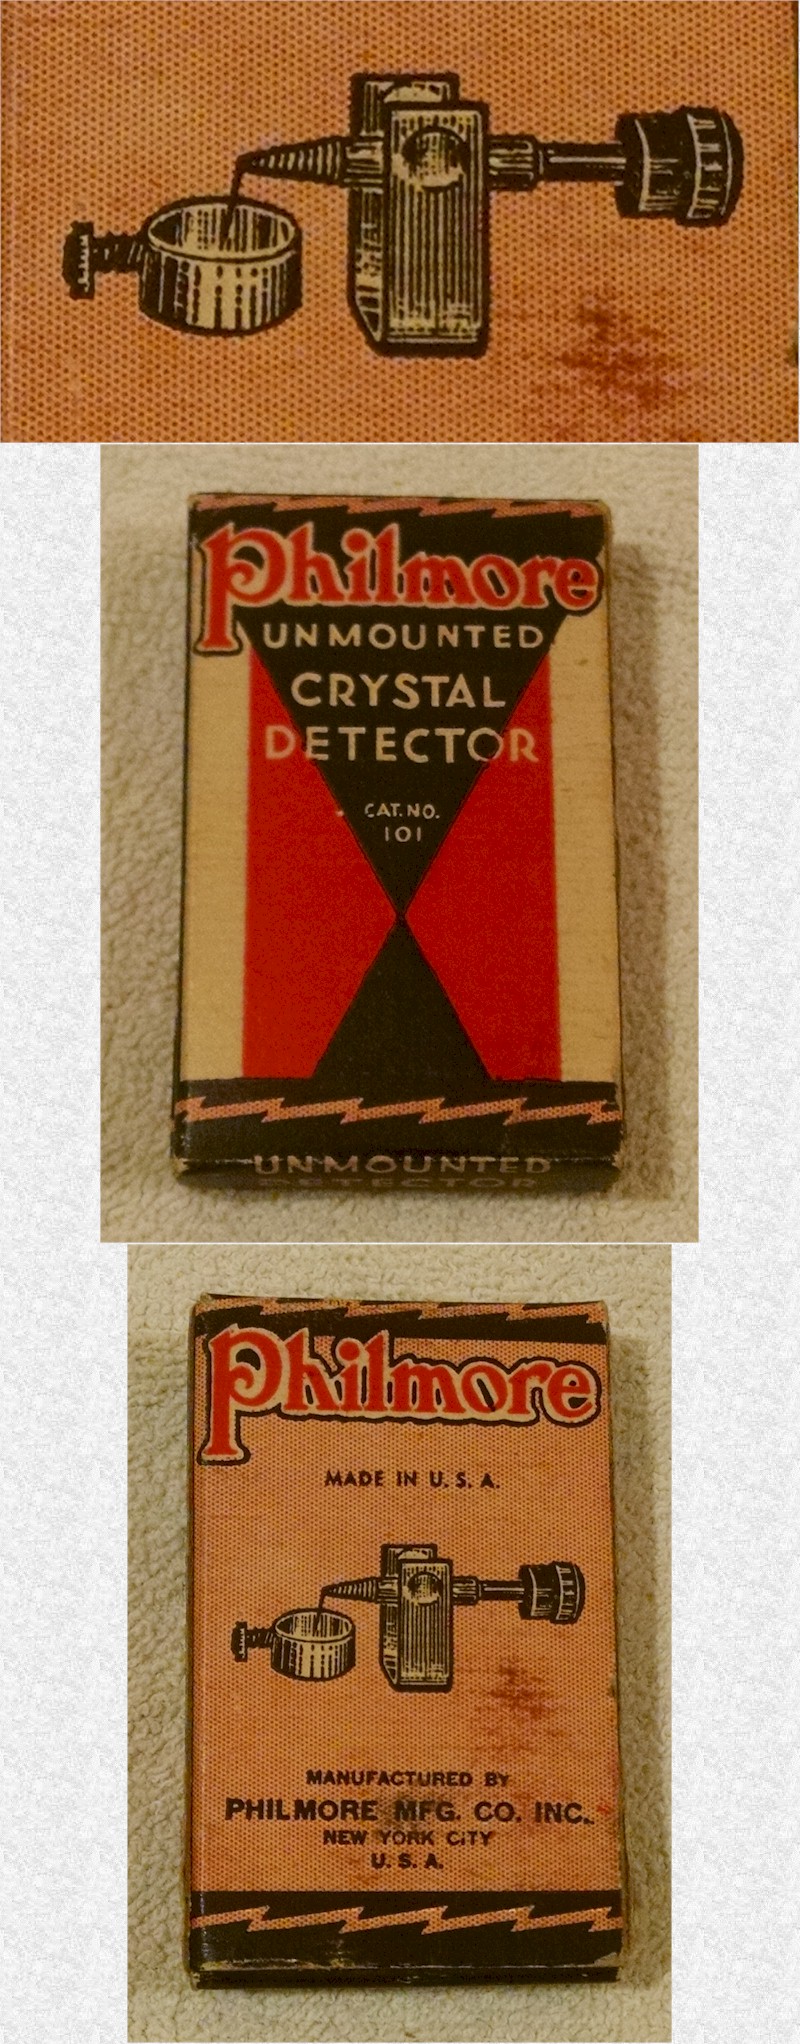 Philmore 101 Unmounted Crystal Detector